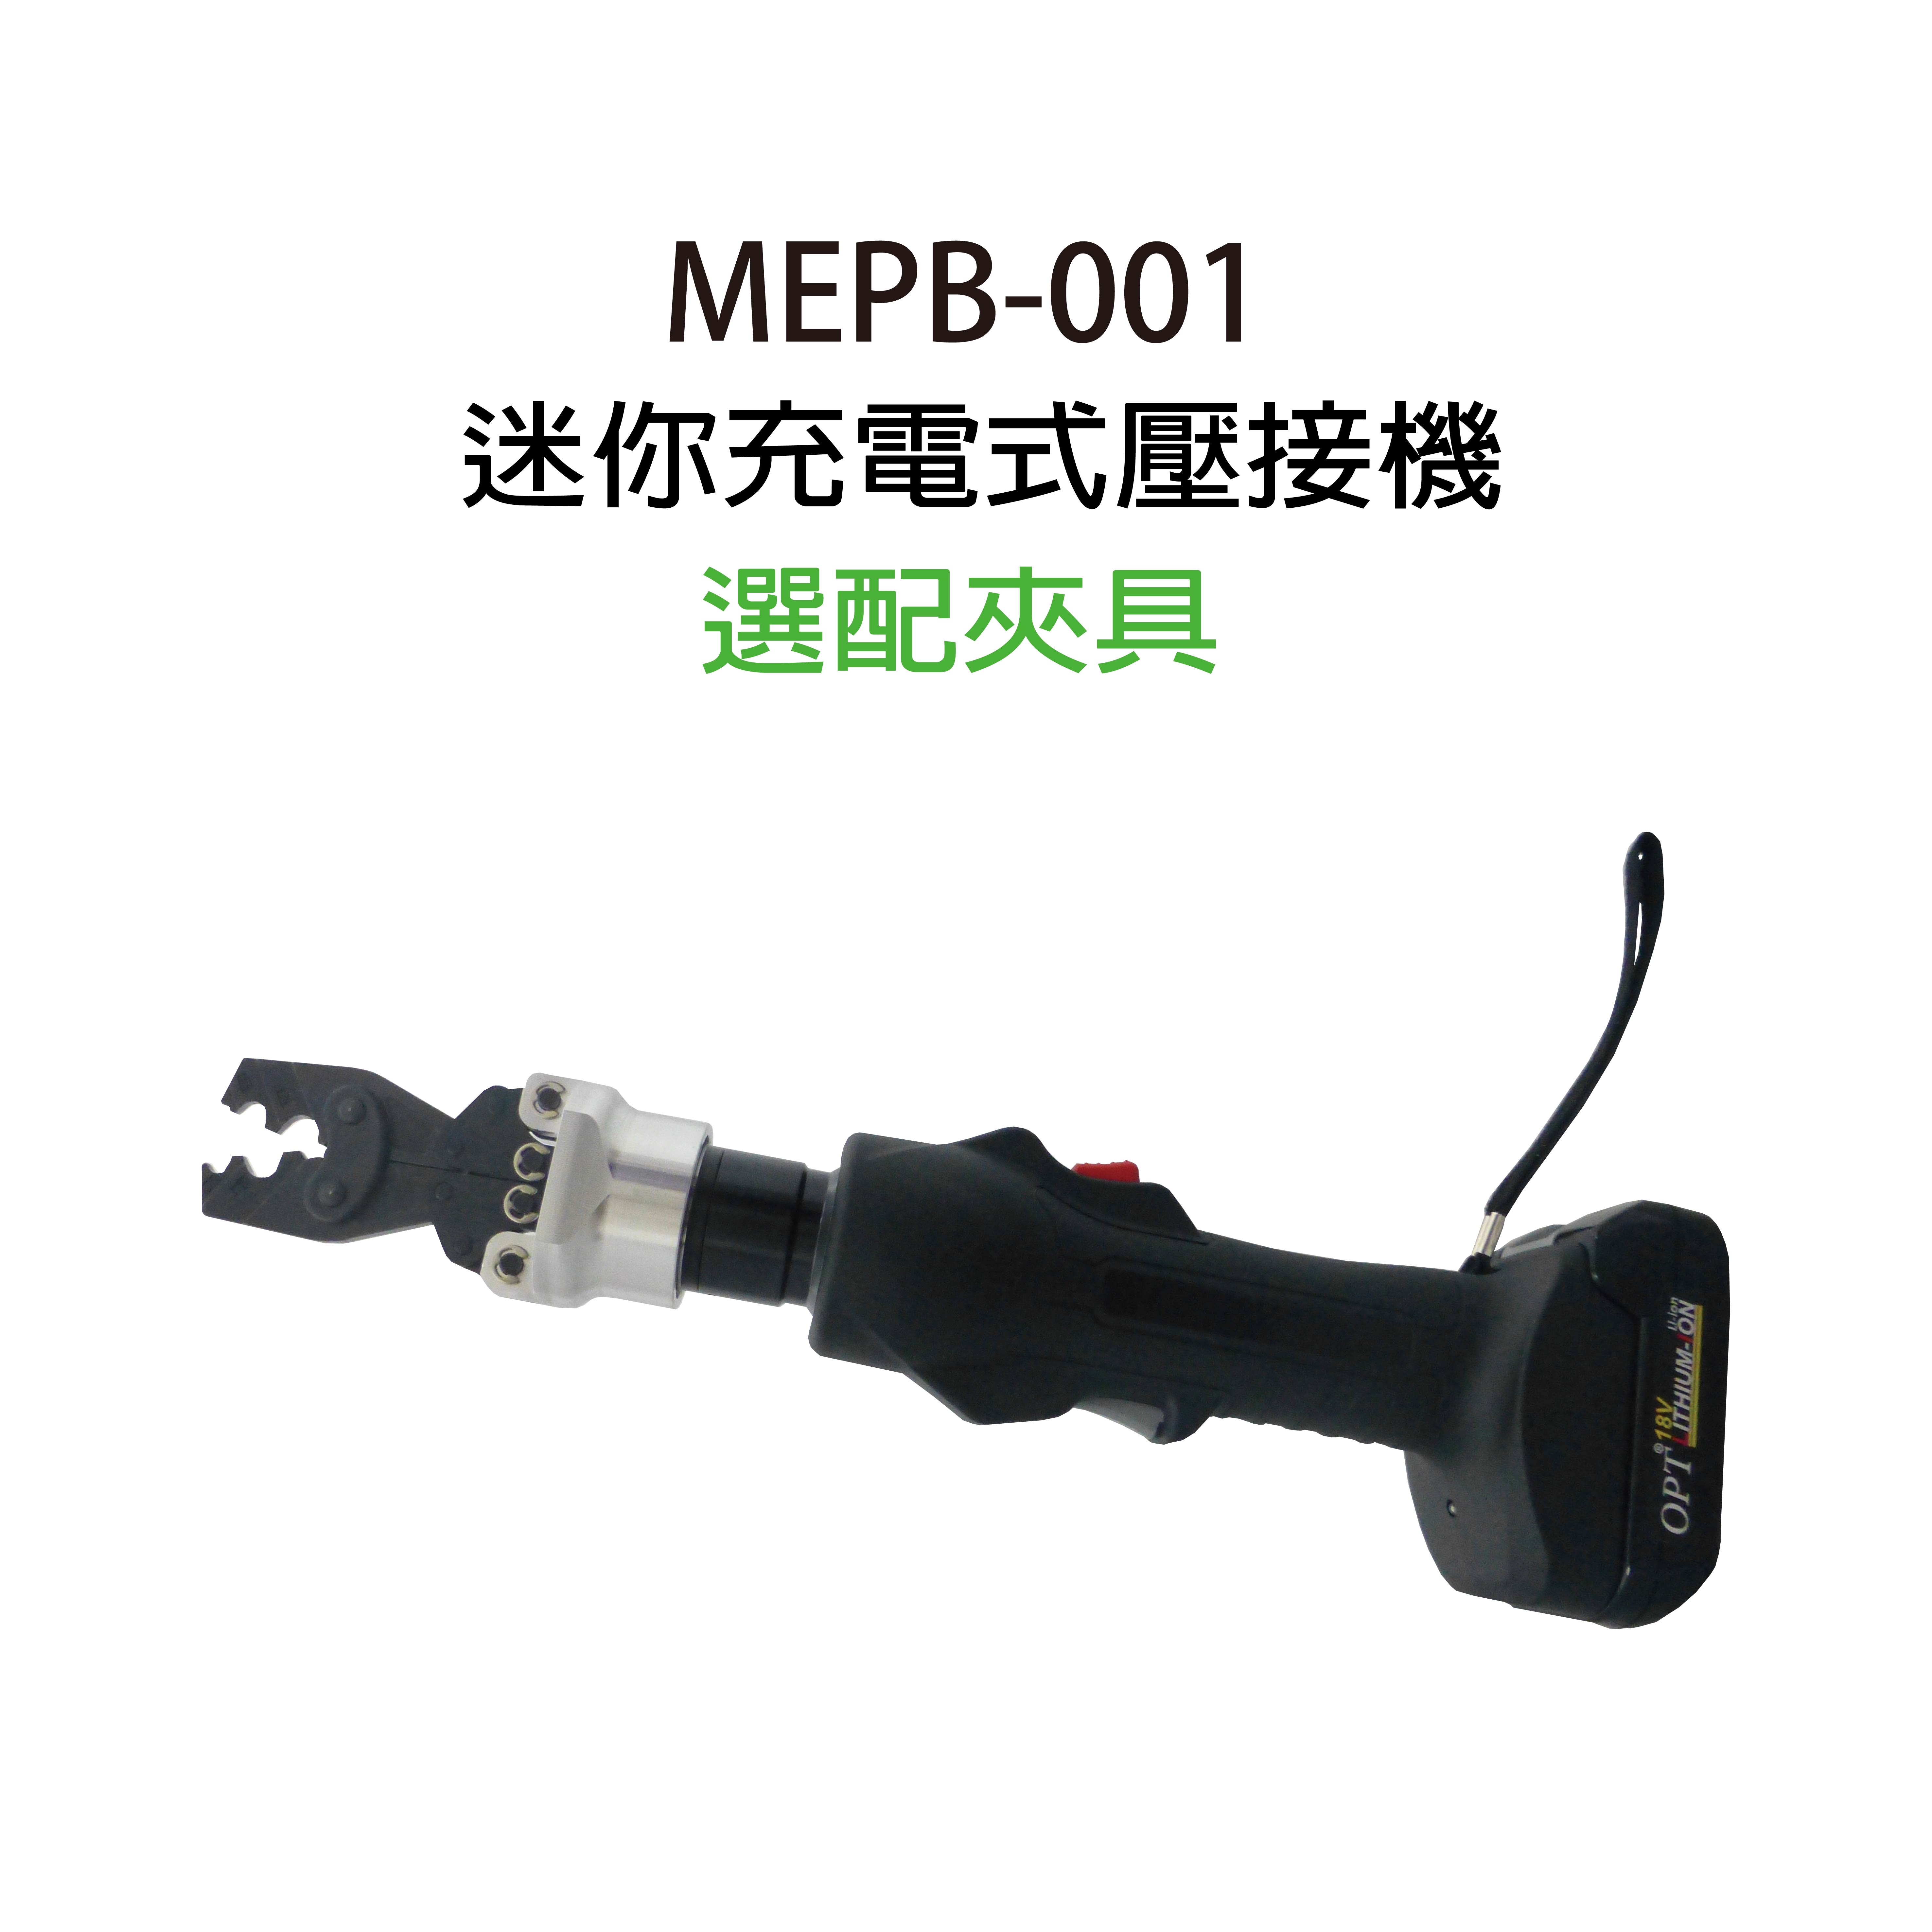 MEPB-001／ 18V 迷你電動壓接